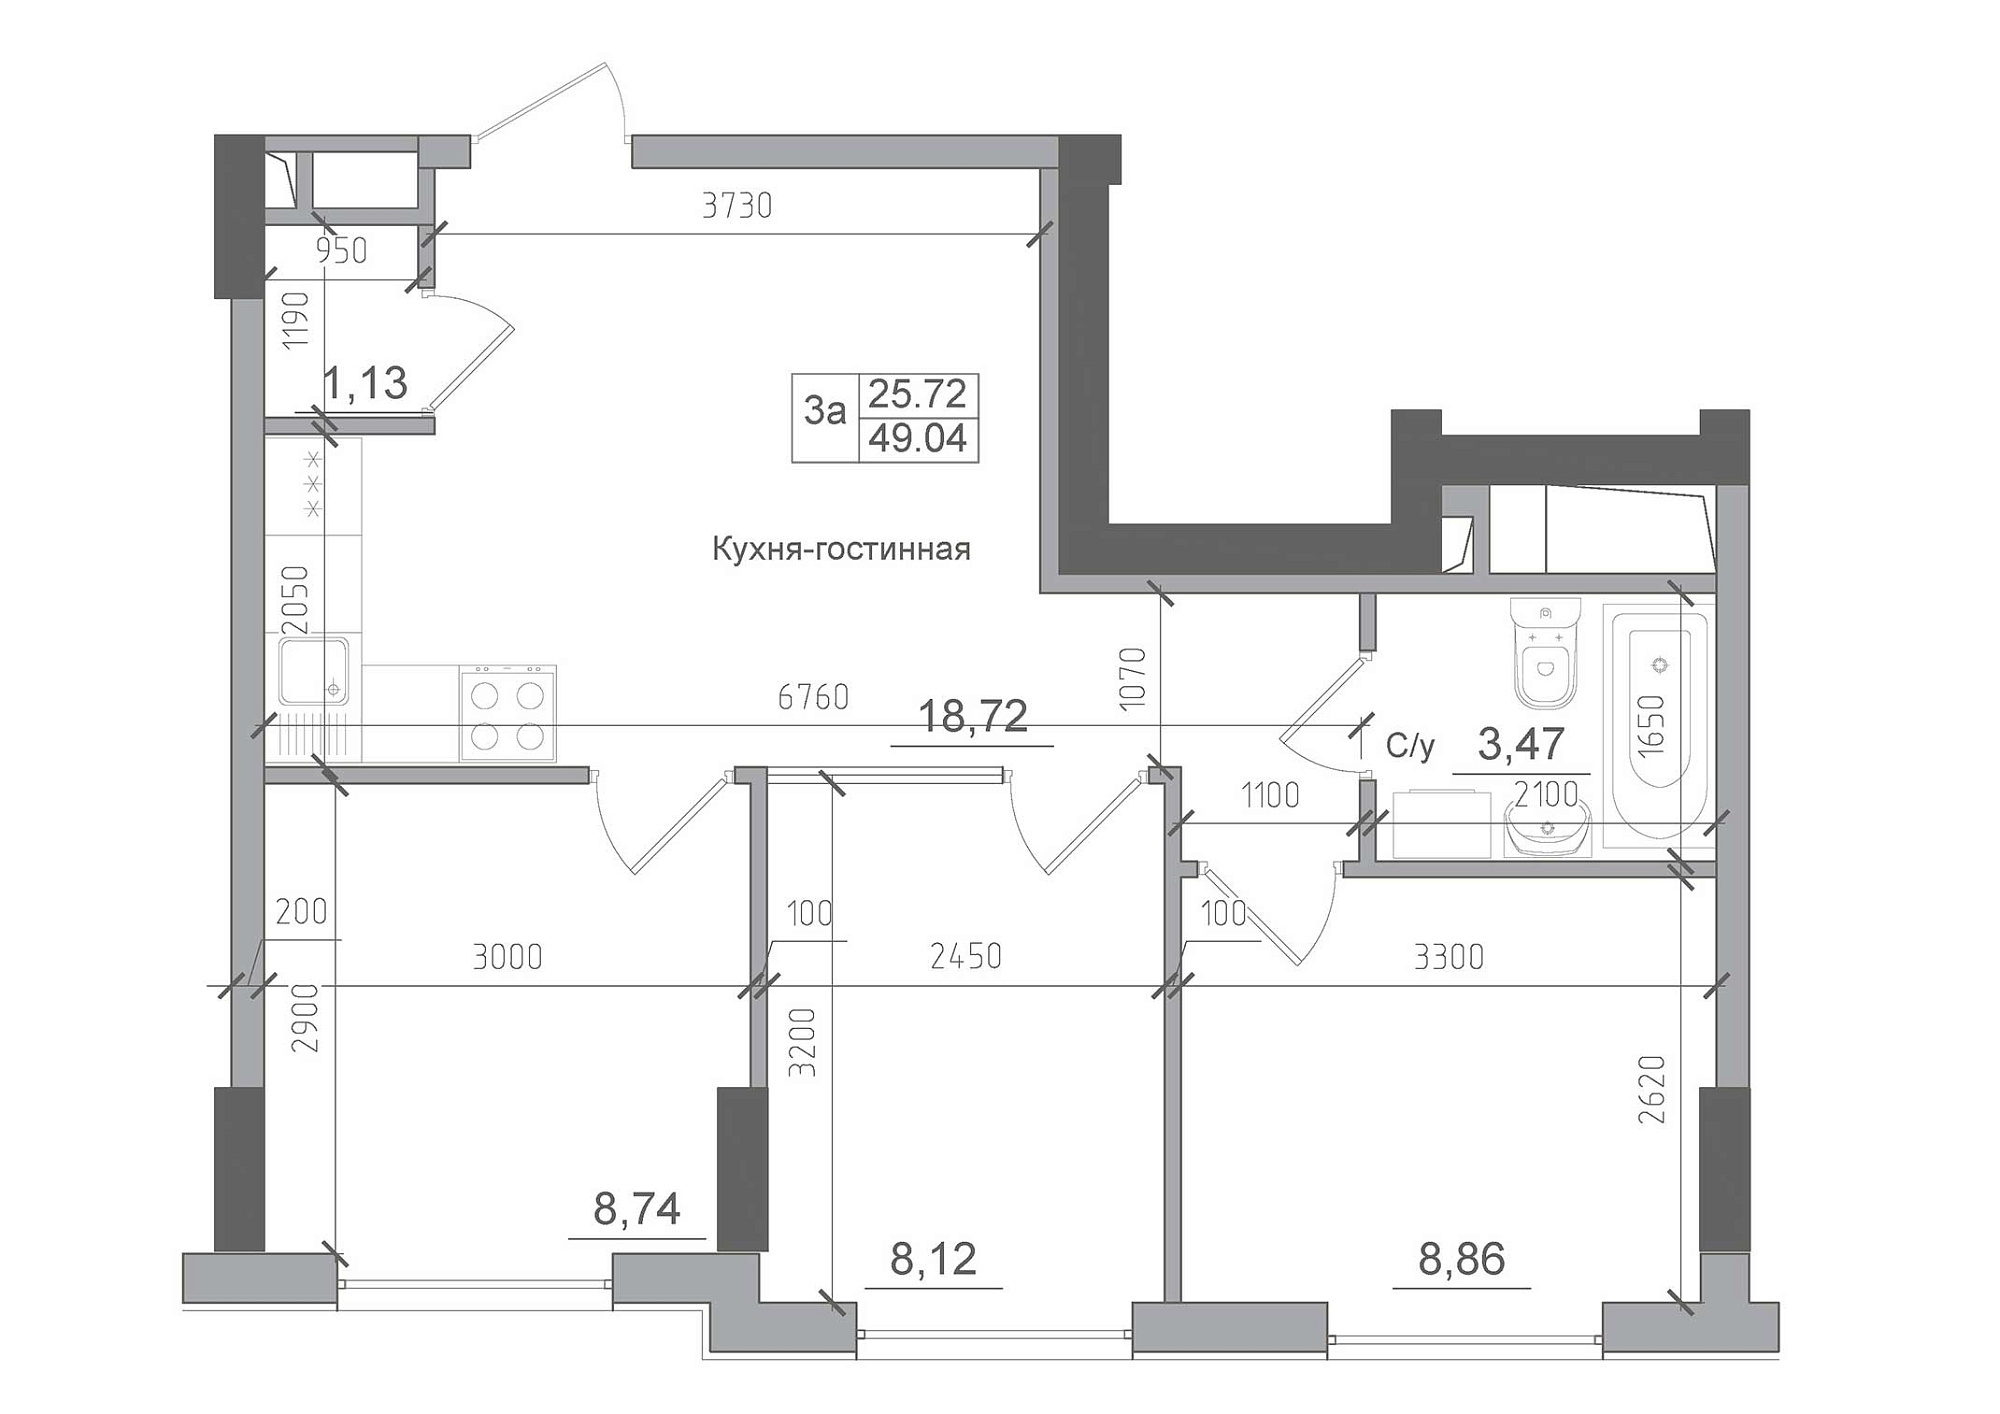 Планування 3-к квартира площею 49.04м2, AB-22-02/00007.